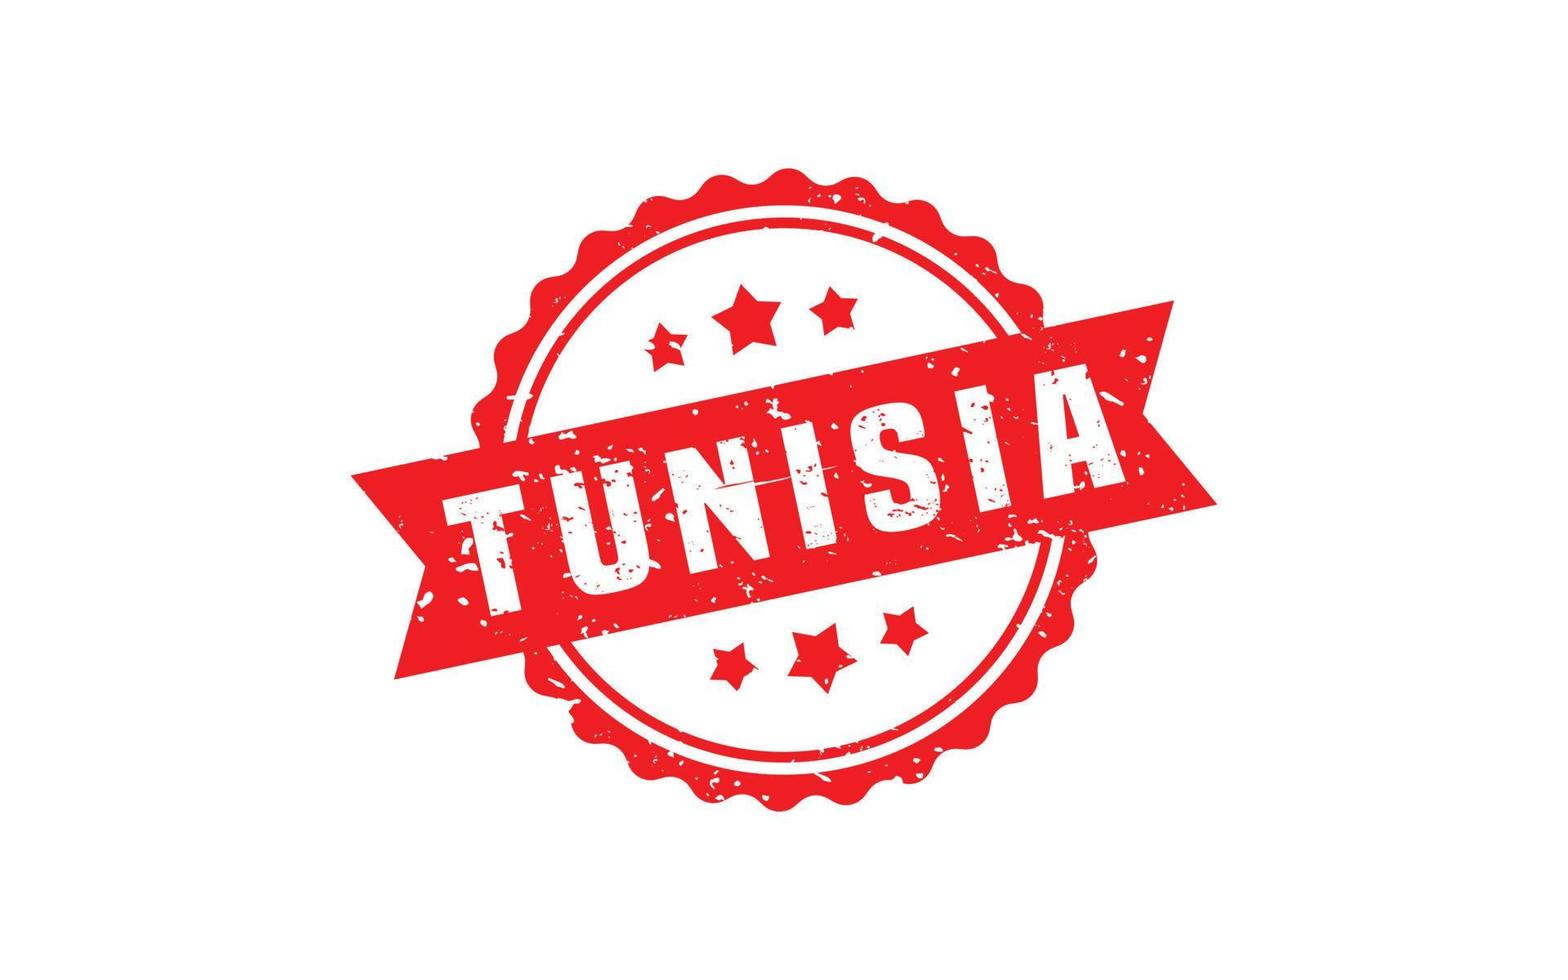 tunisia francobollo gomma da cancellare con grunge stile su bianca sfondo vettore